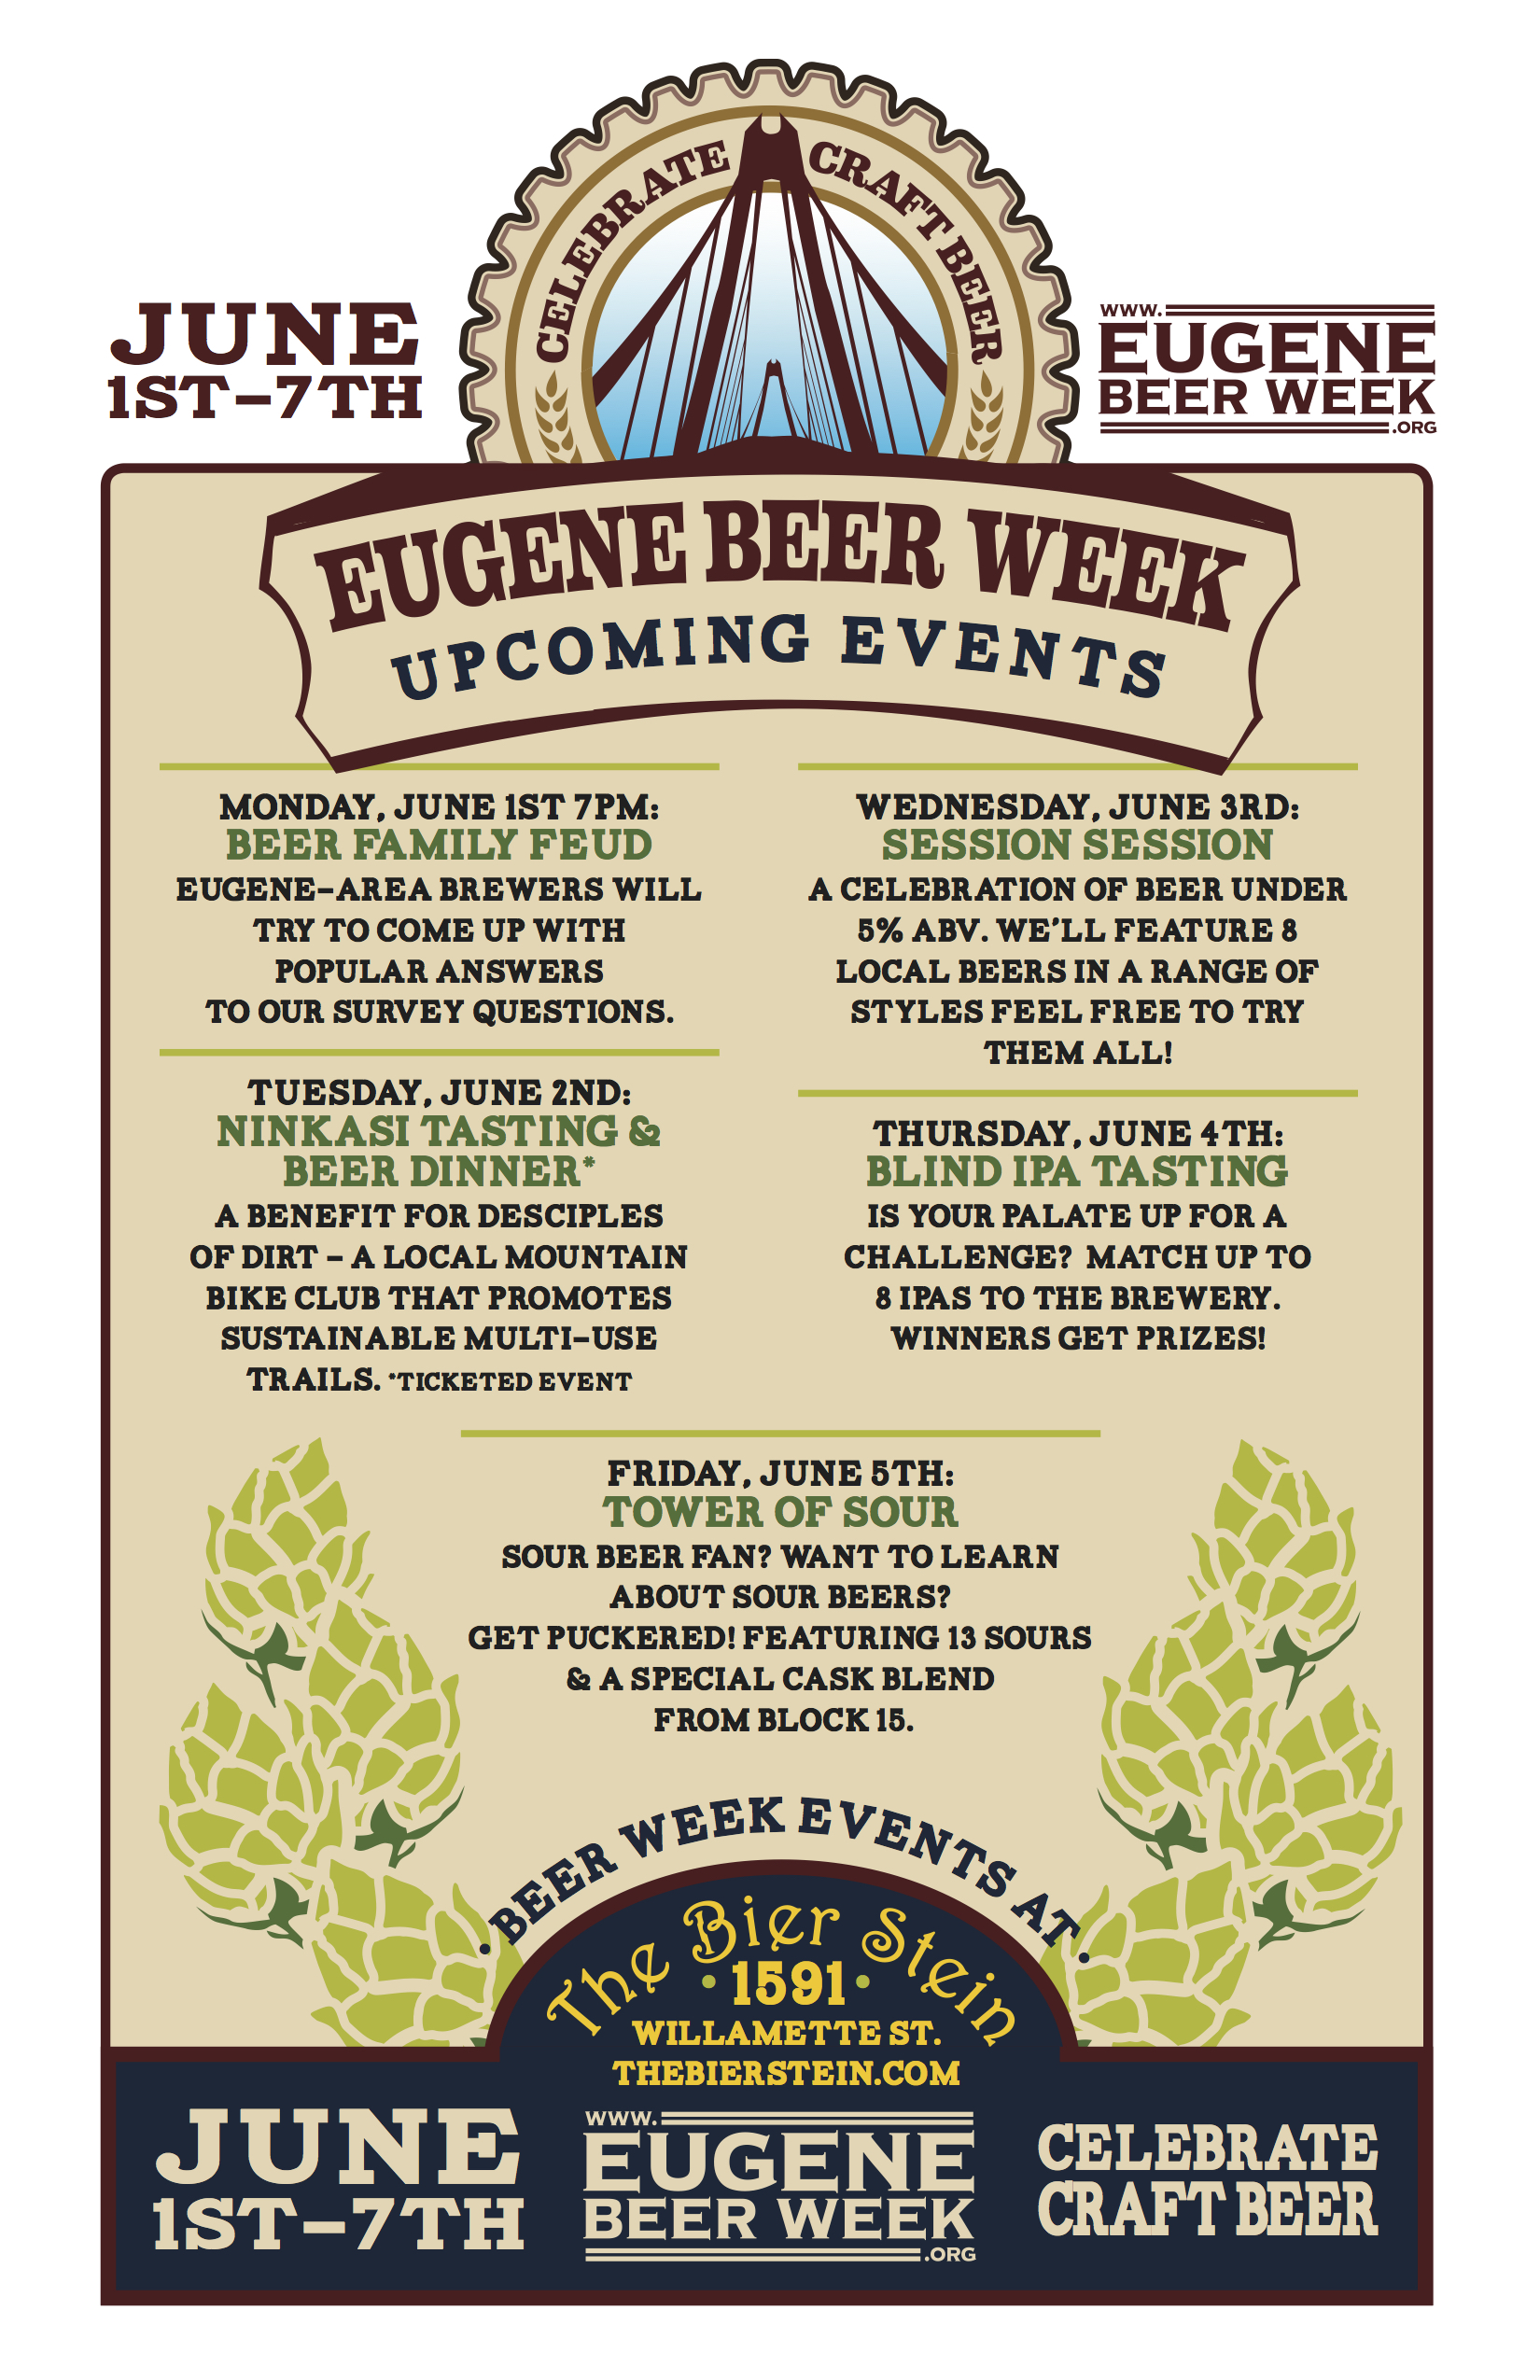 Bier Stein Euegen Beer Week Events